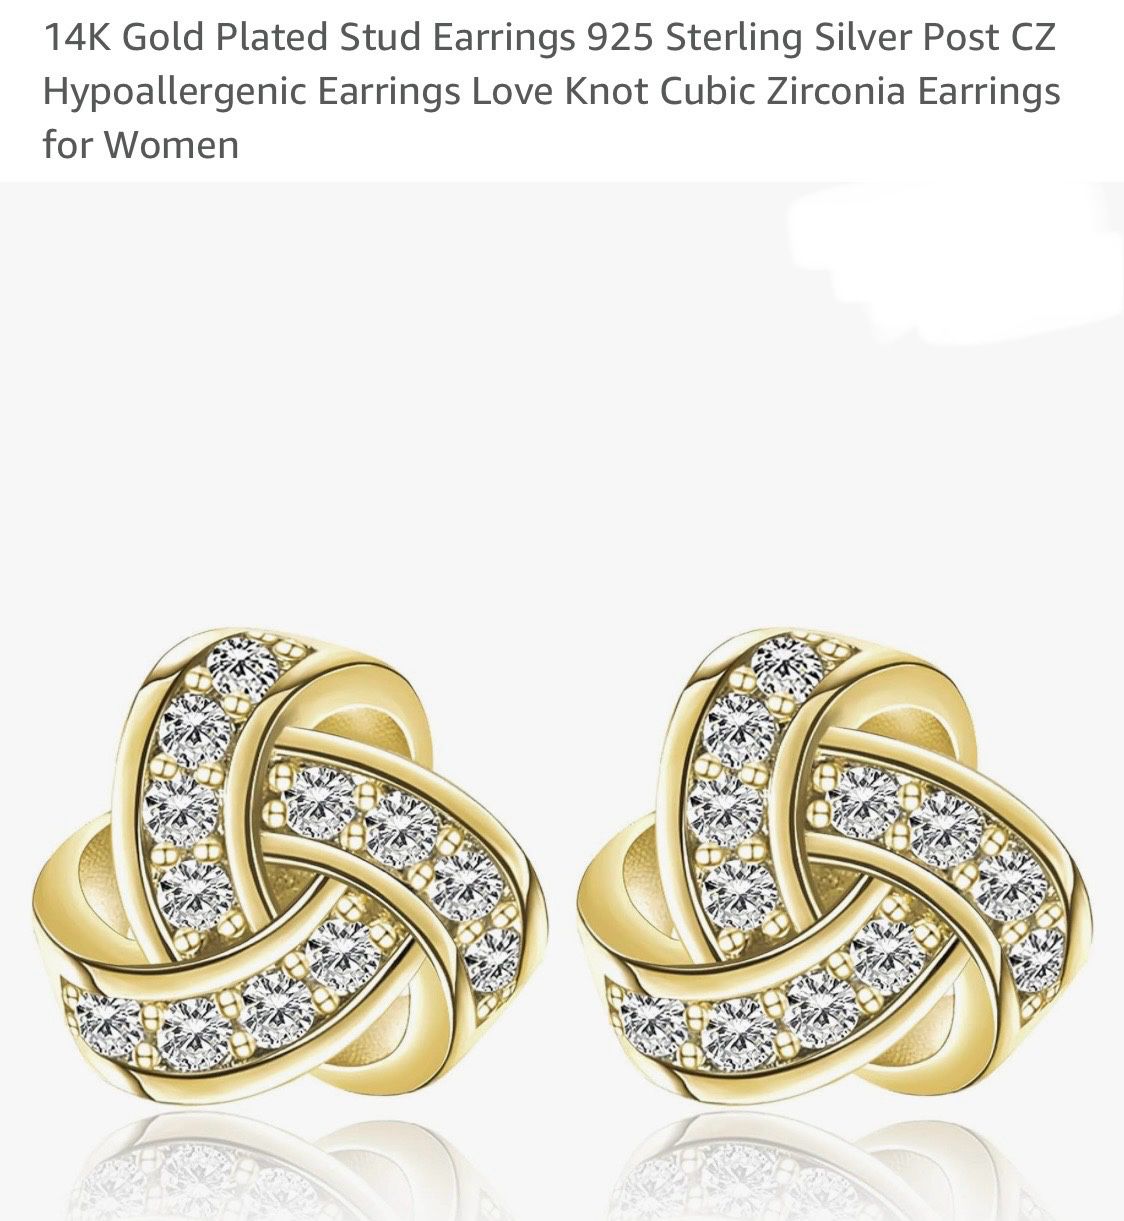 14K Gold Plated Stud Earrings 925 Sterling Silver Post CZ Hypoallergenic Earrings Love Knot Cubic Zirconia Earrings